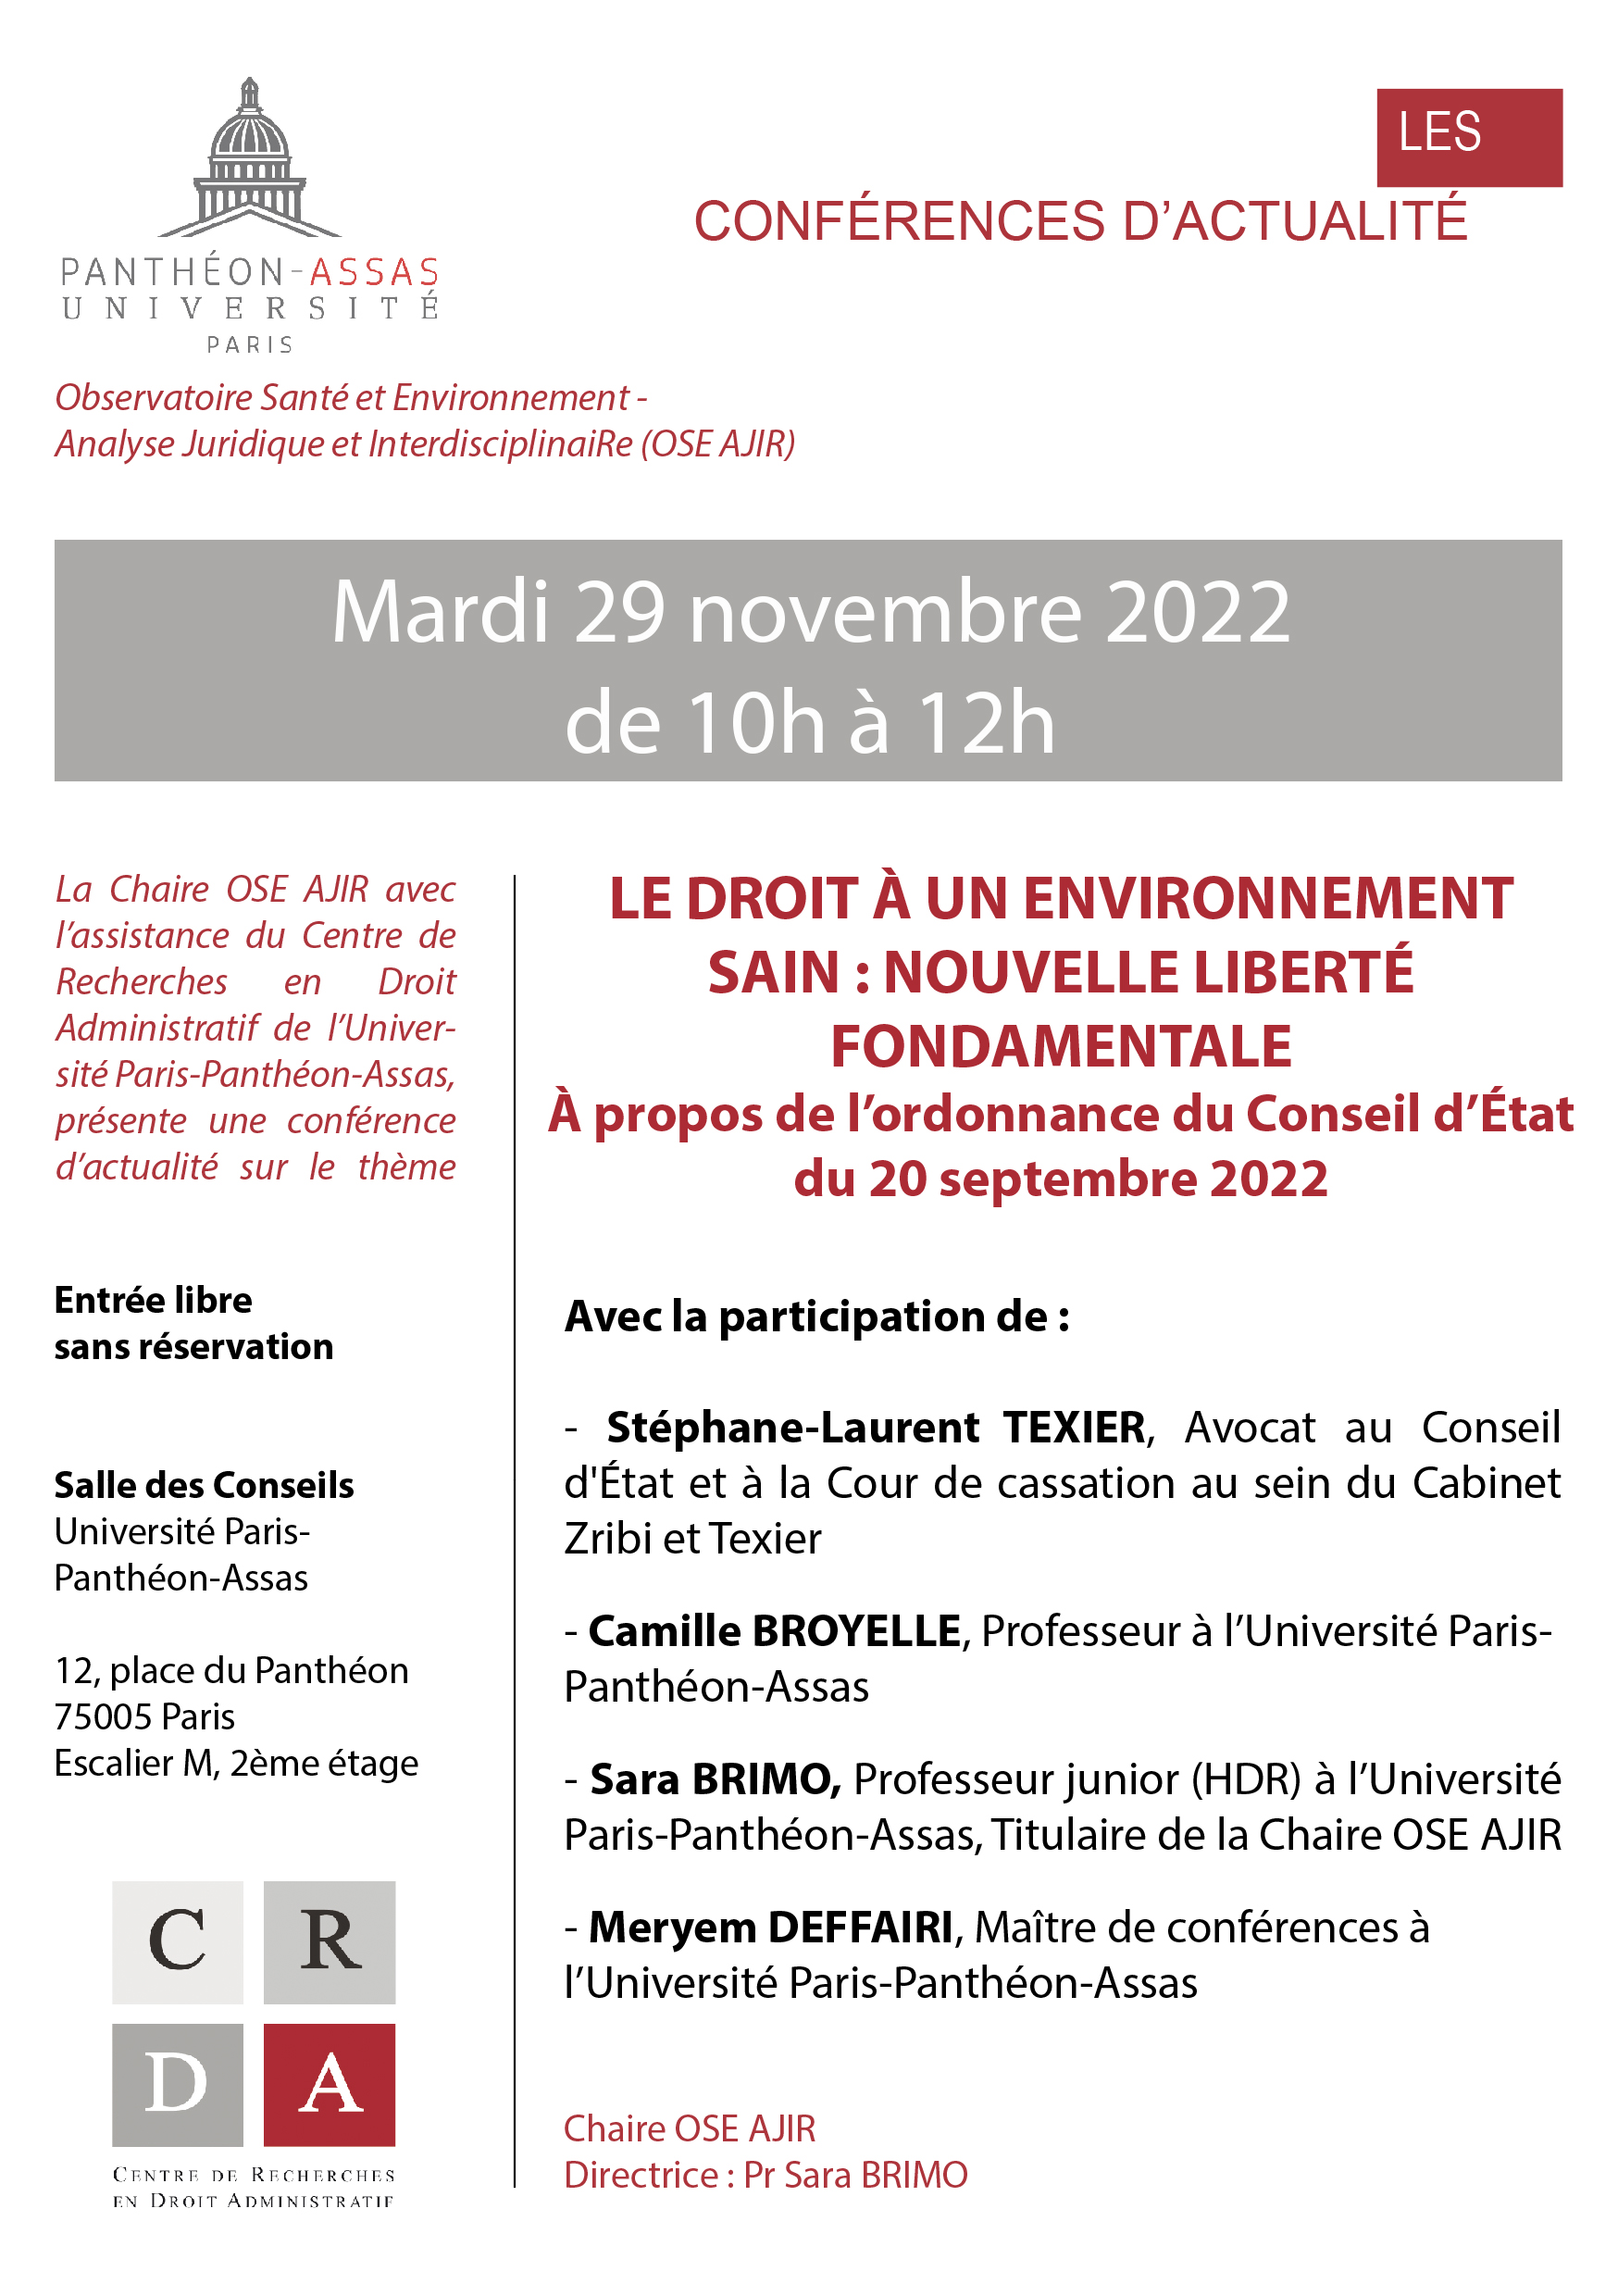 conference_actualite_29_novembre_2022-CRDA